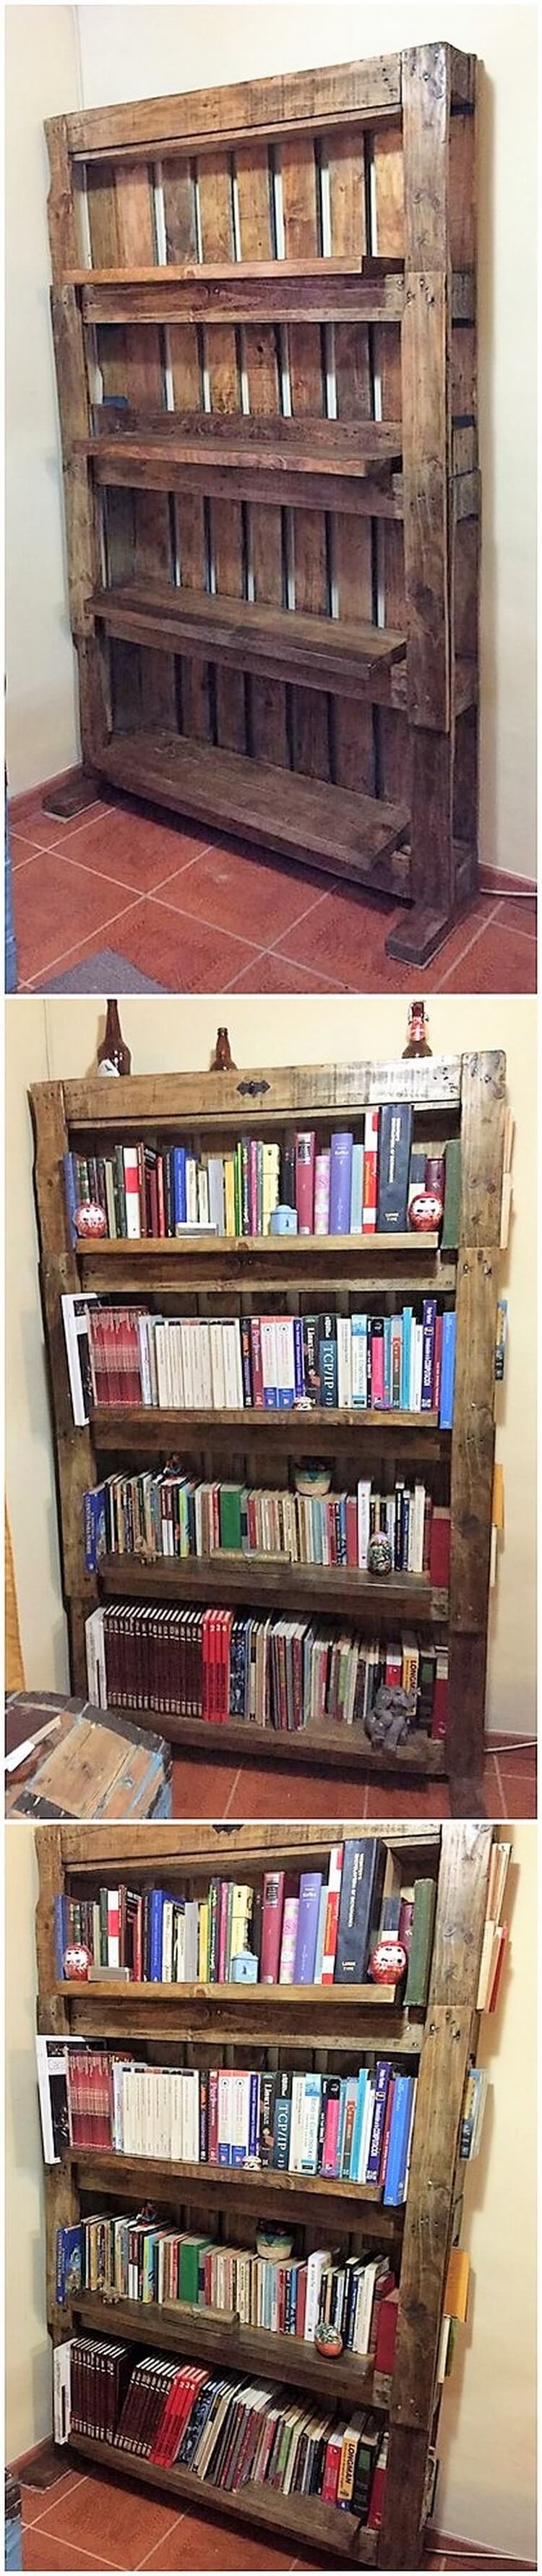 Pallet Bookshelving